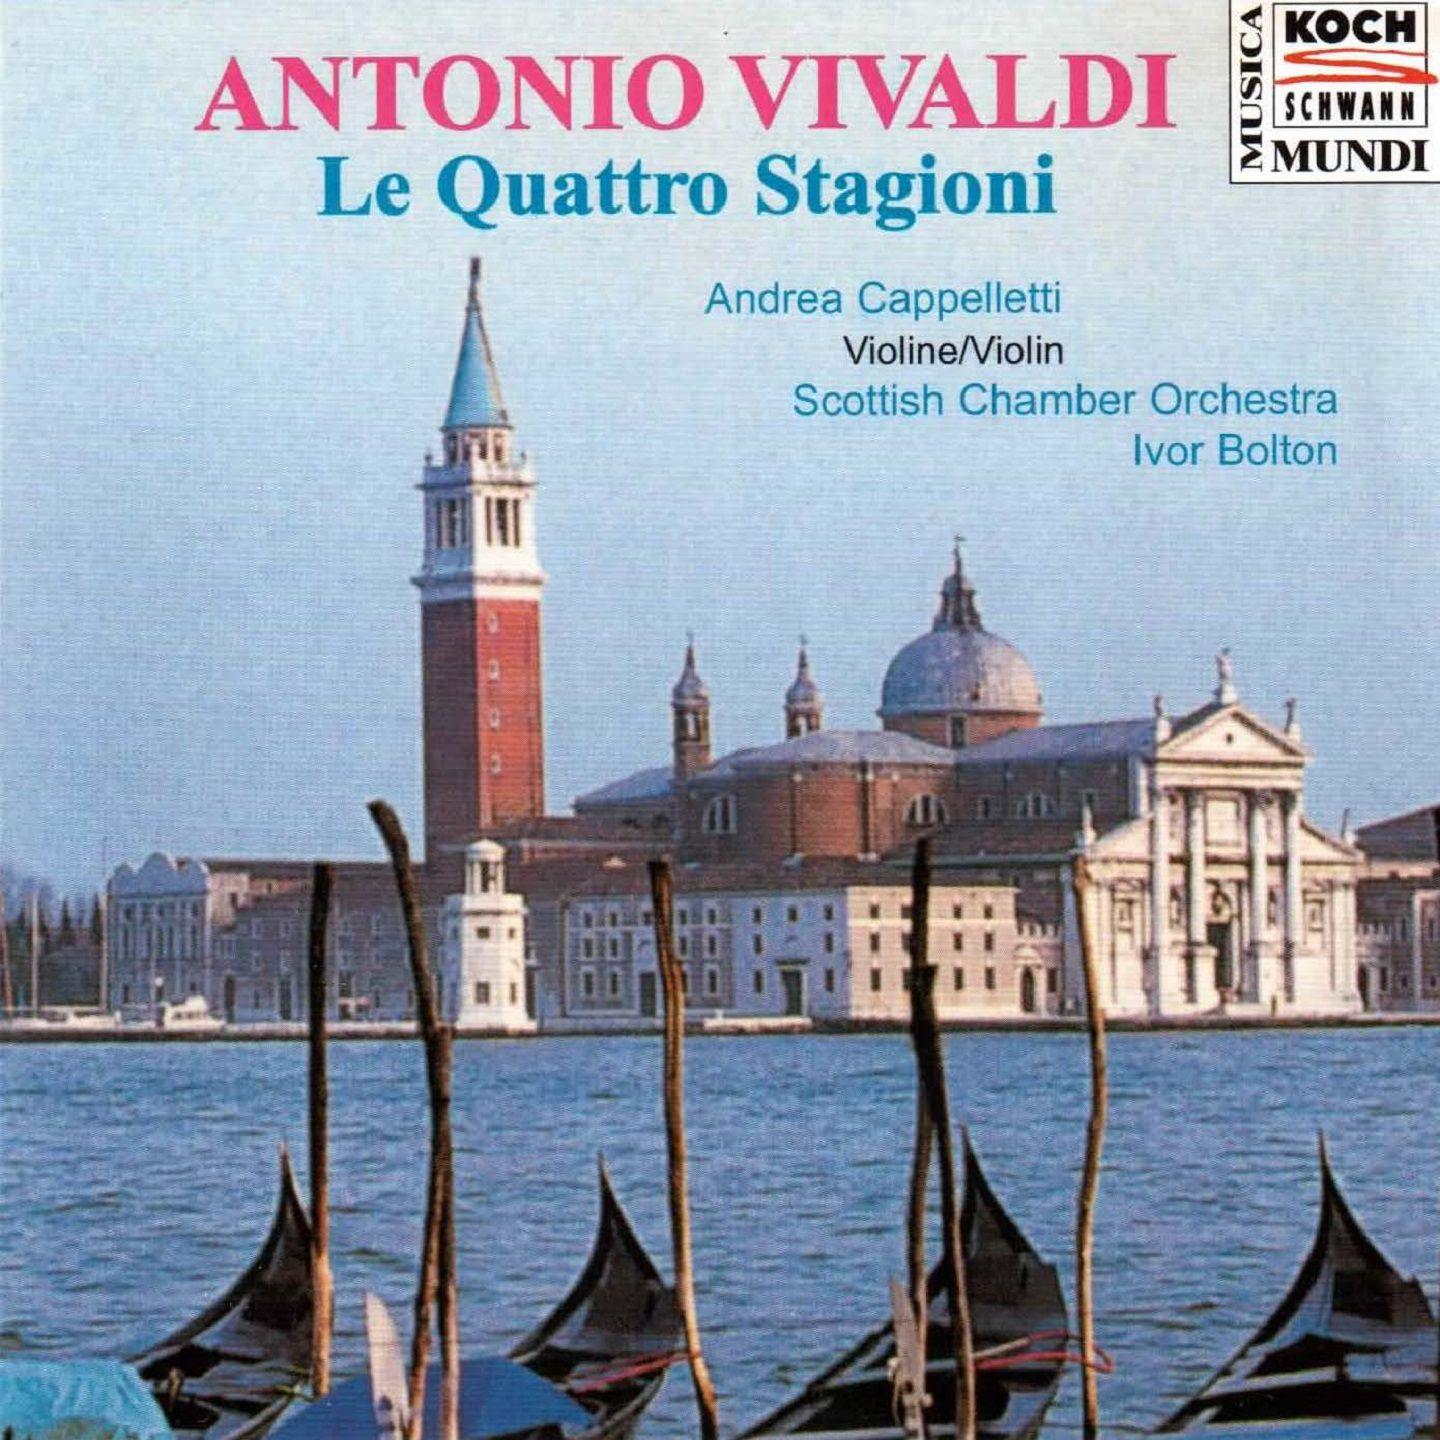 The Four Seasons, Violin Concerto No. 1 in E Major, RV 269 "La primavera": I. Allegro